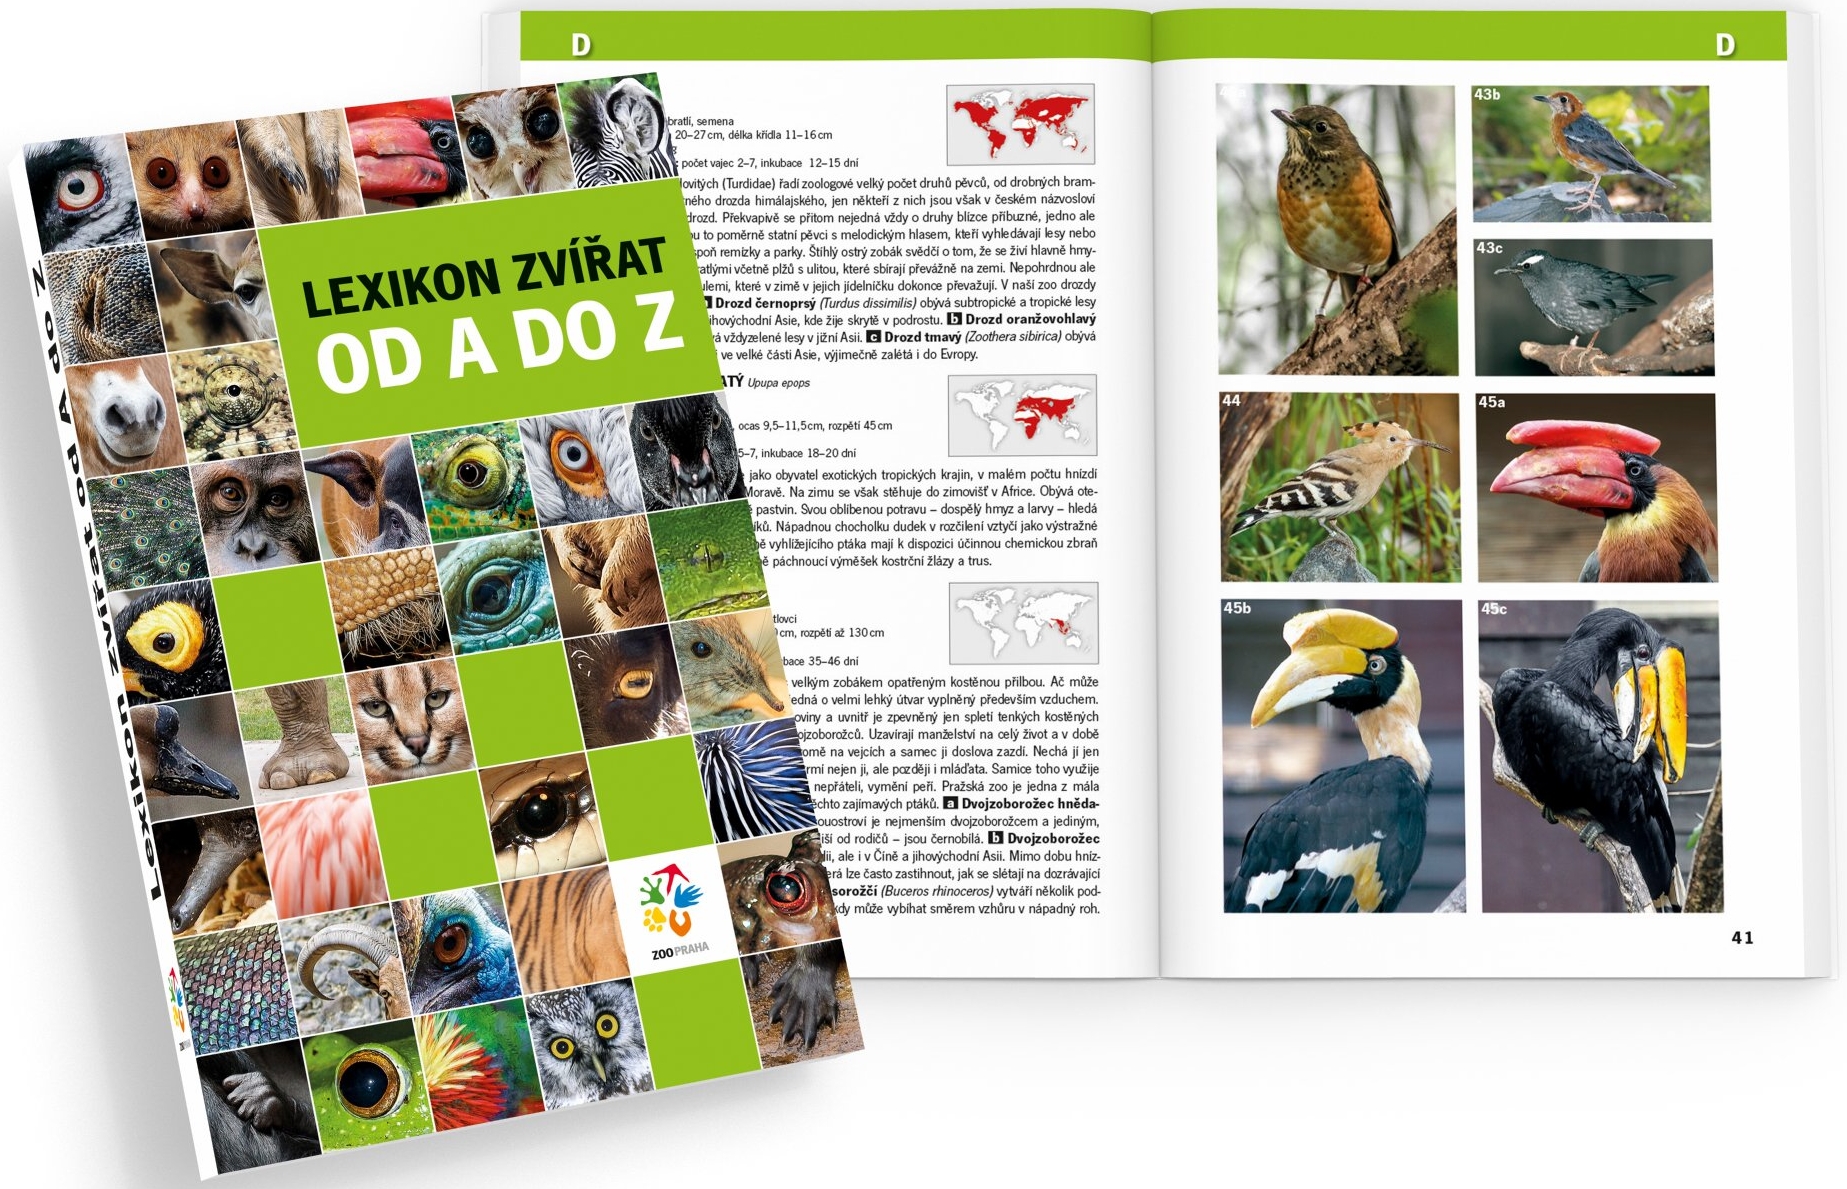 V rámci slavnosti byla pokřtěna nová publikace Zoo Praha s názvem Lexikon zvířat od A do Z.